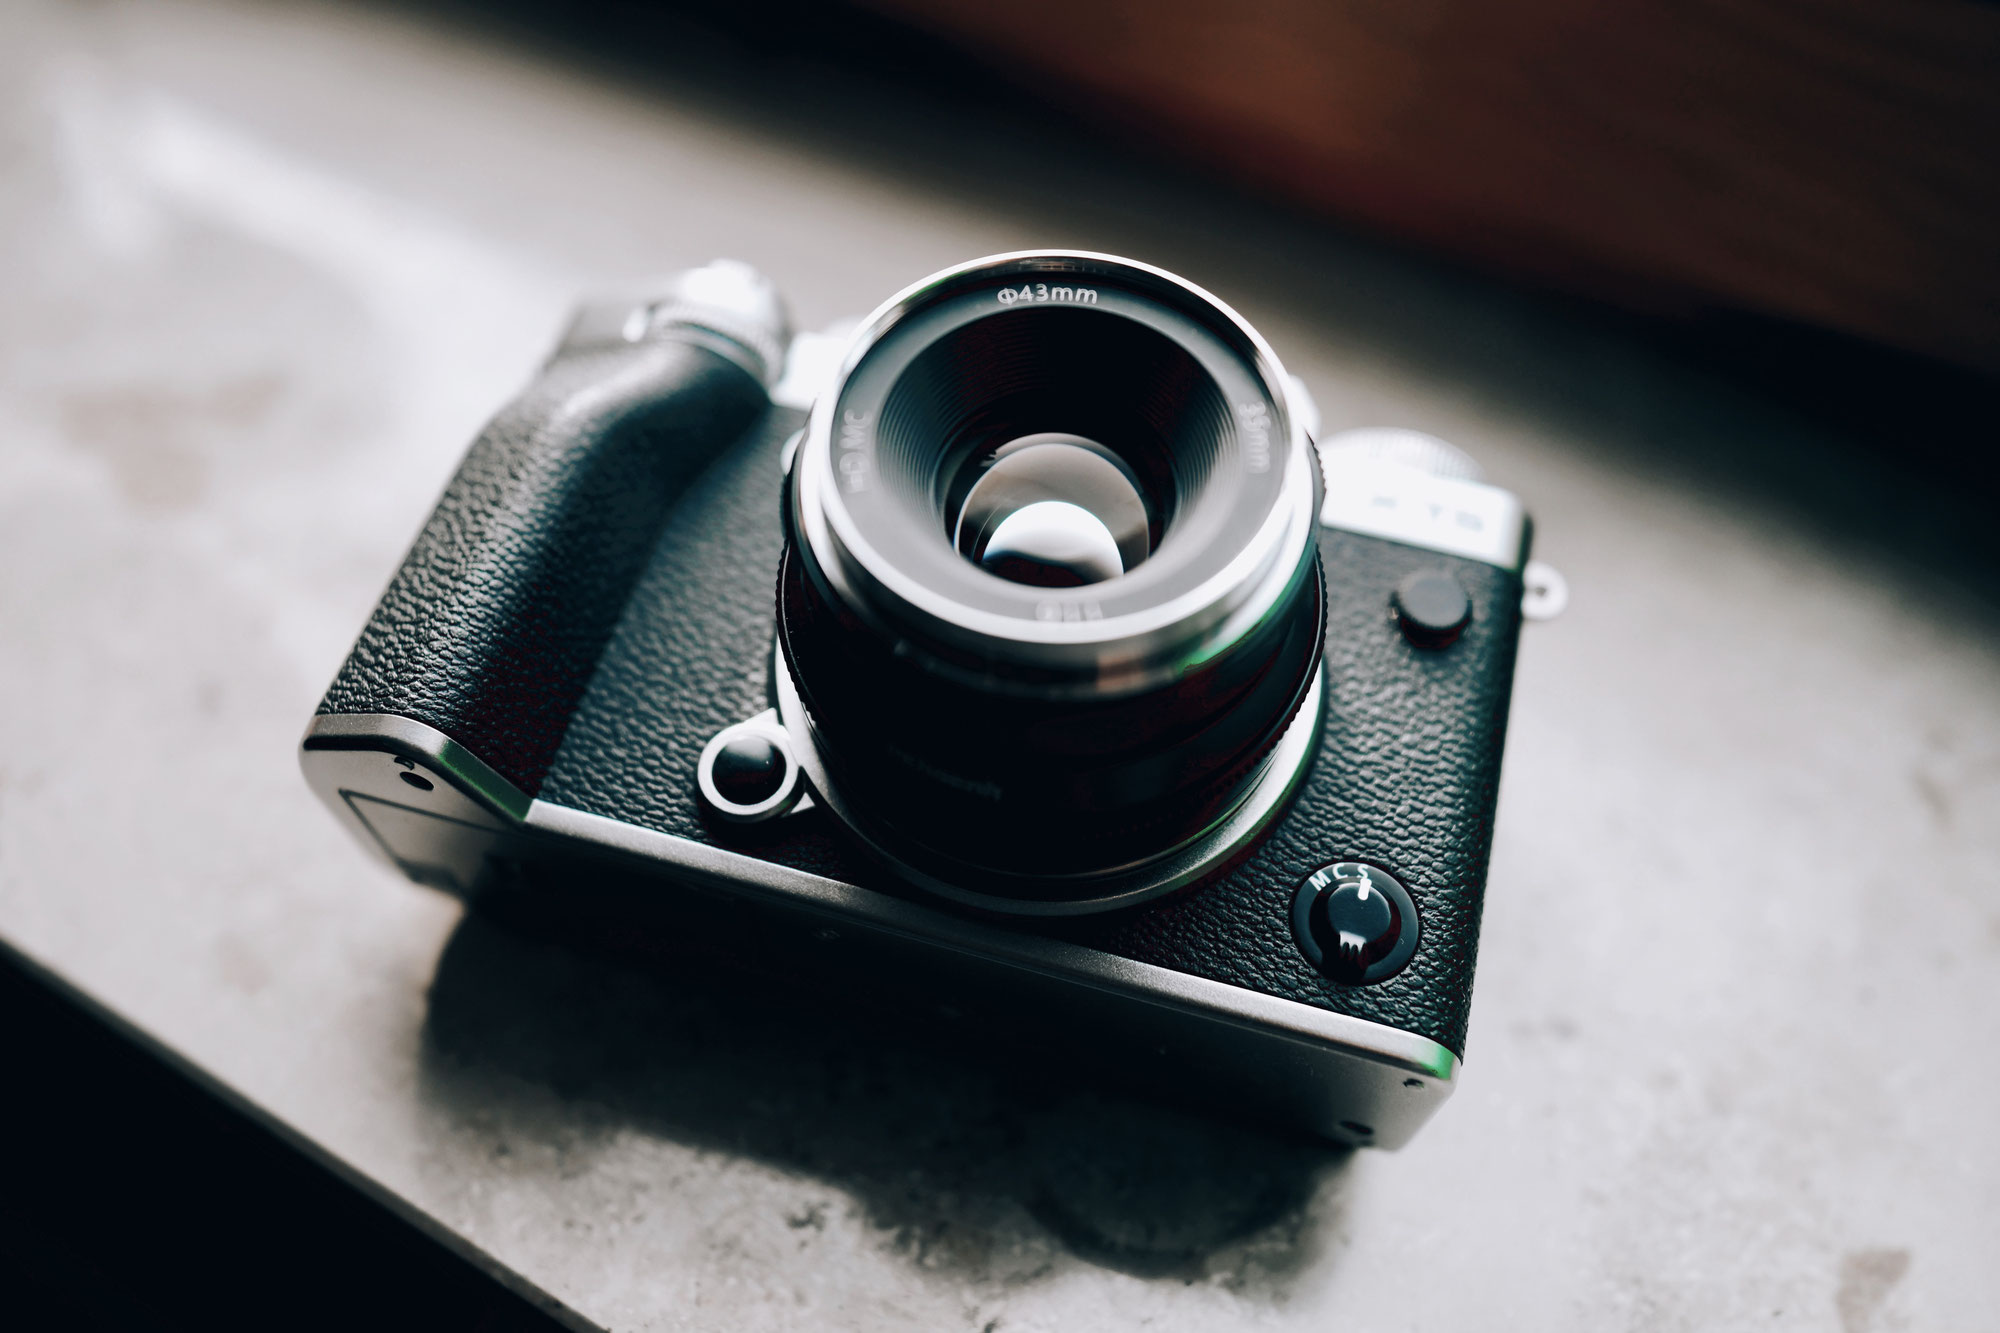 Objektiv Test: Das Pergear 35mm f1.4 Objektiv für Fujifilm X-Mount: Ein manuelles Budget-Objektiv mit beeindruckender Schärfe